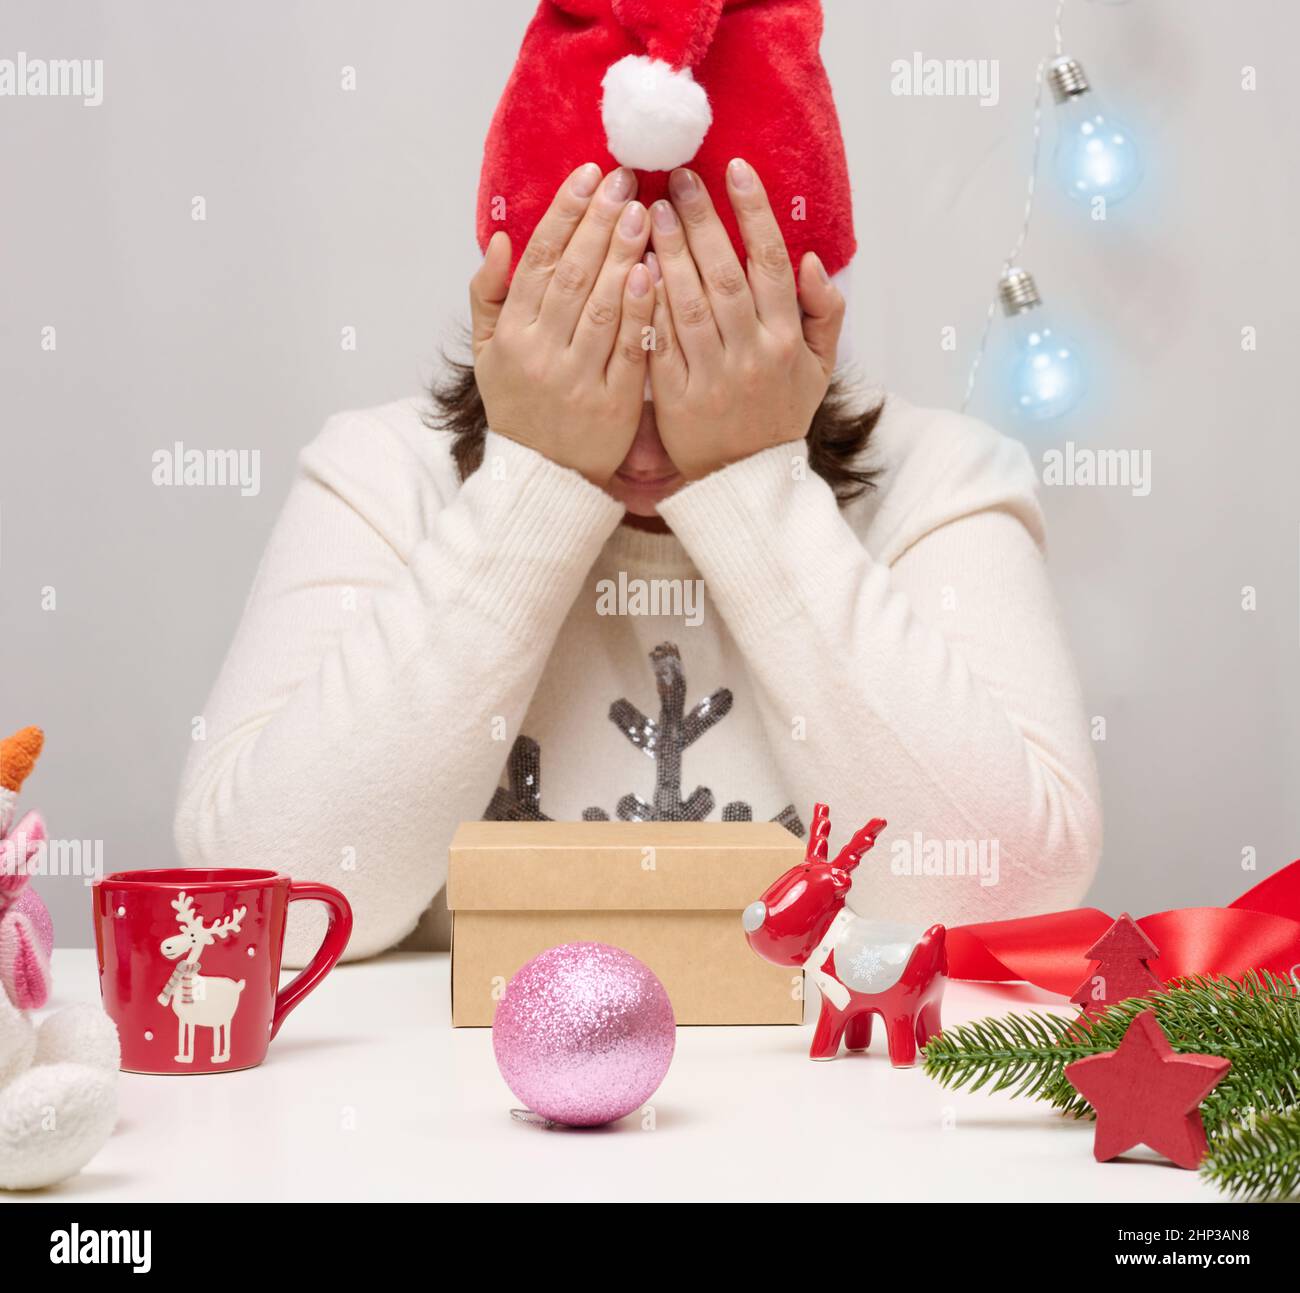 Una donna in un maglione bianco siede al tavolo e avvolge regali per Natale. Tieni la testa con le mani, tristezza Foto Stock